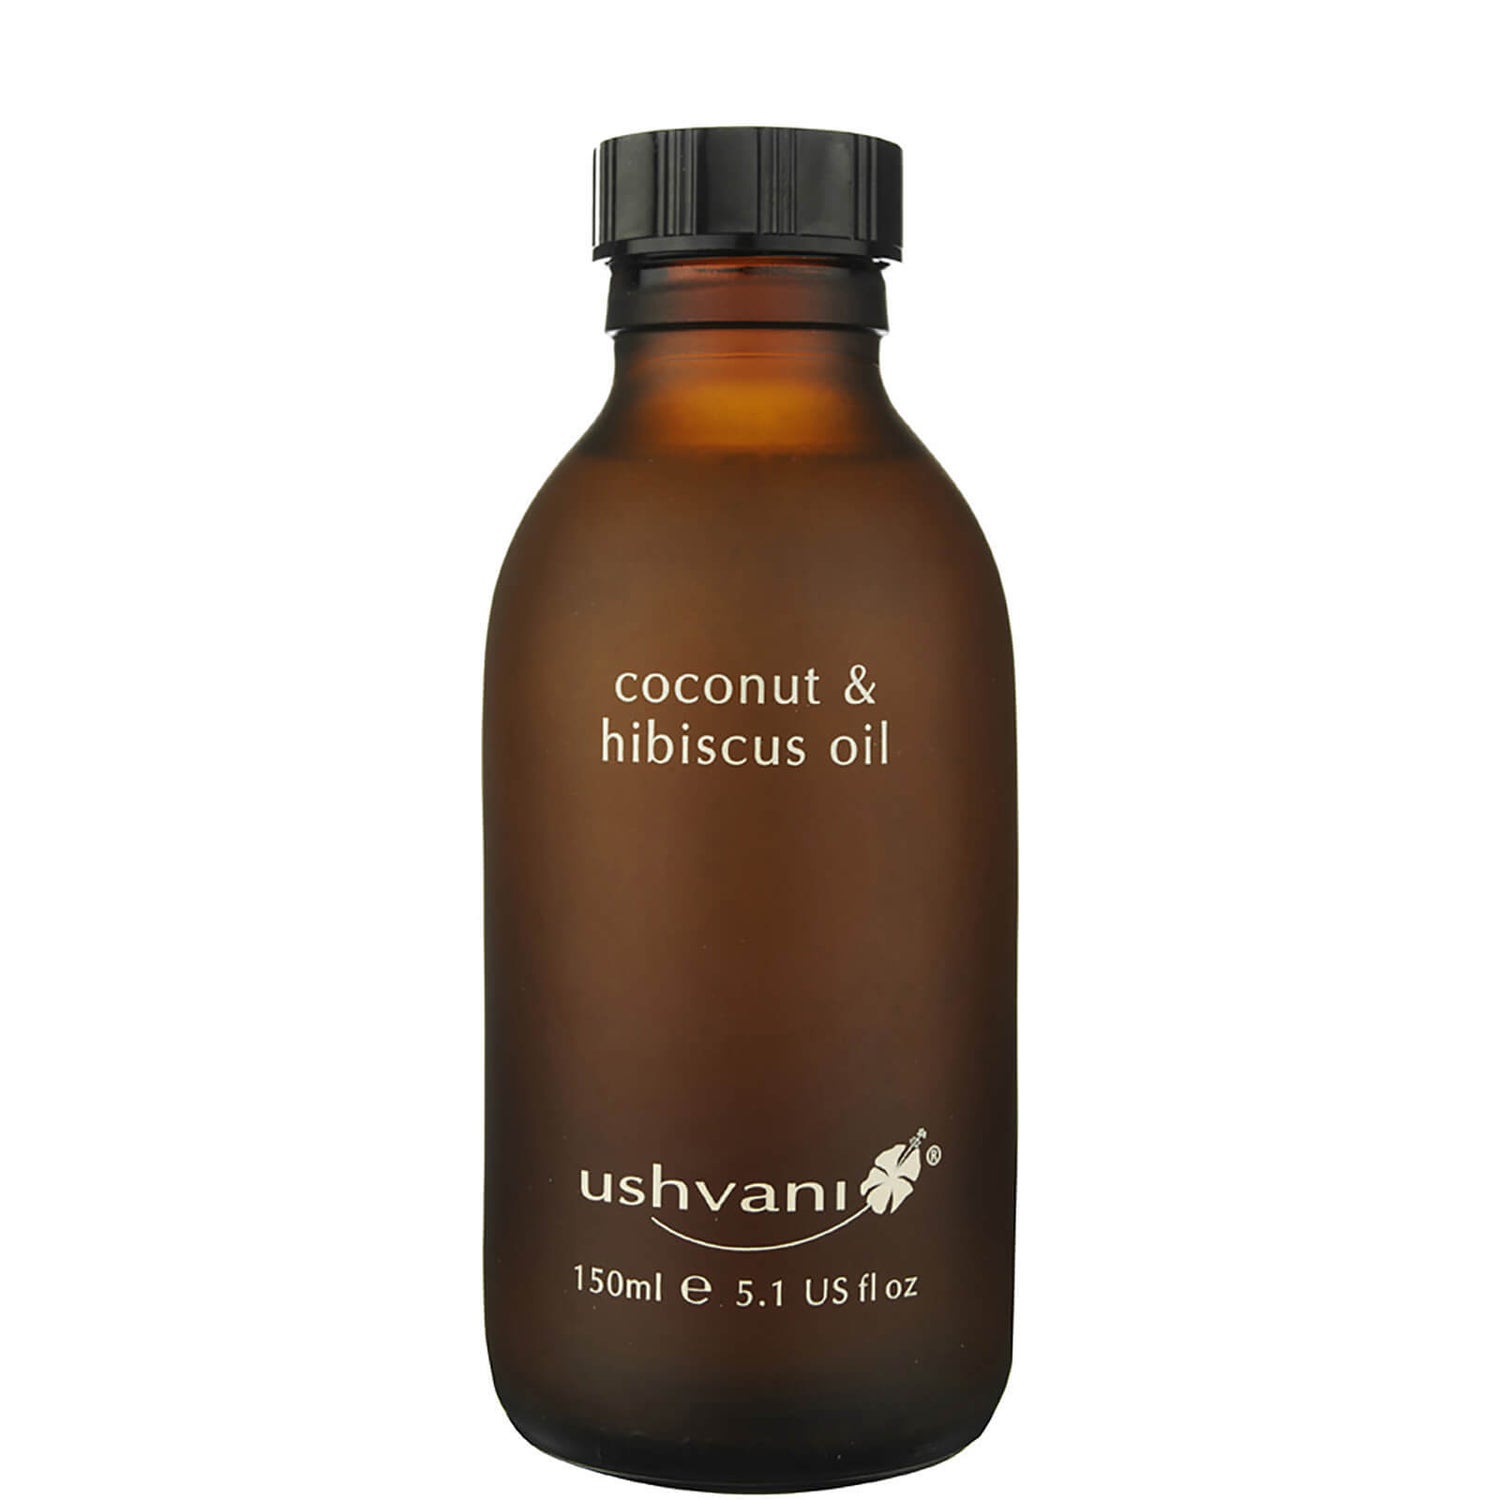 Ushvani Coconut & Hibiscus Oil